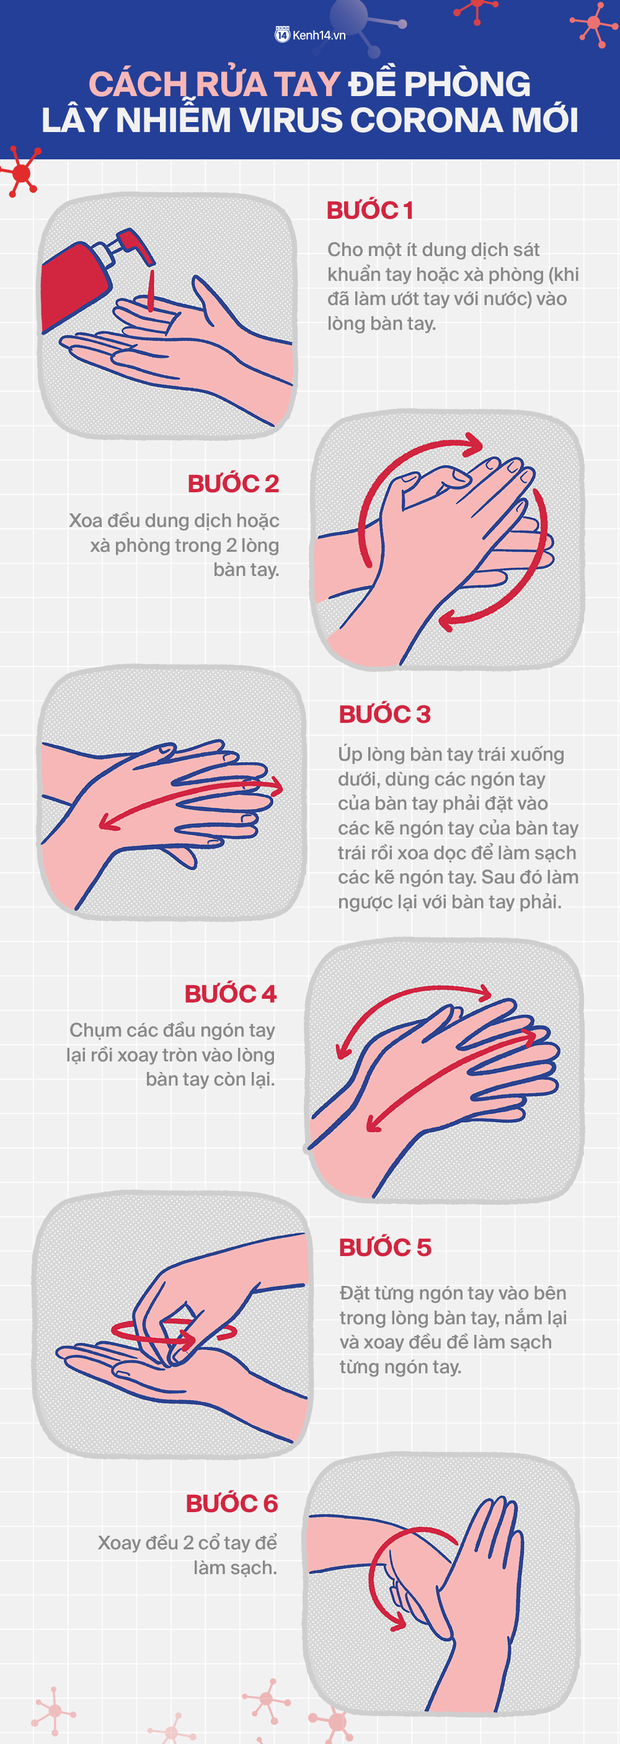 Lạm dụng nước rửa tay khô trong mùa dịch COVID-19: chuyên gia cảnh báo có thể gây tổn thương đến đôi tay - Ảnh 9.